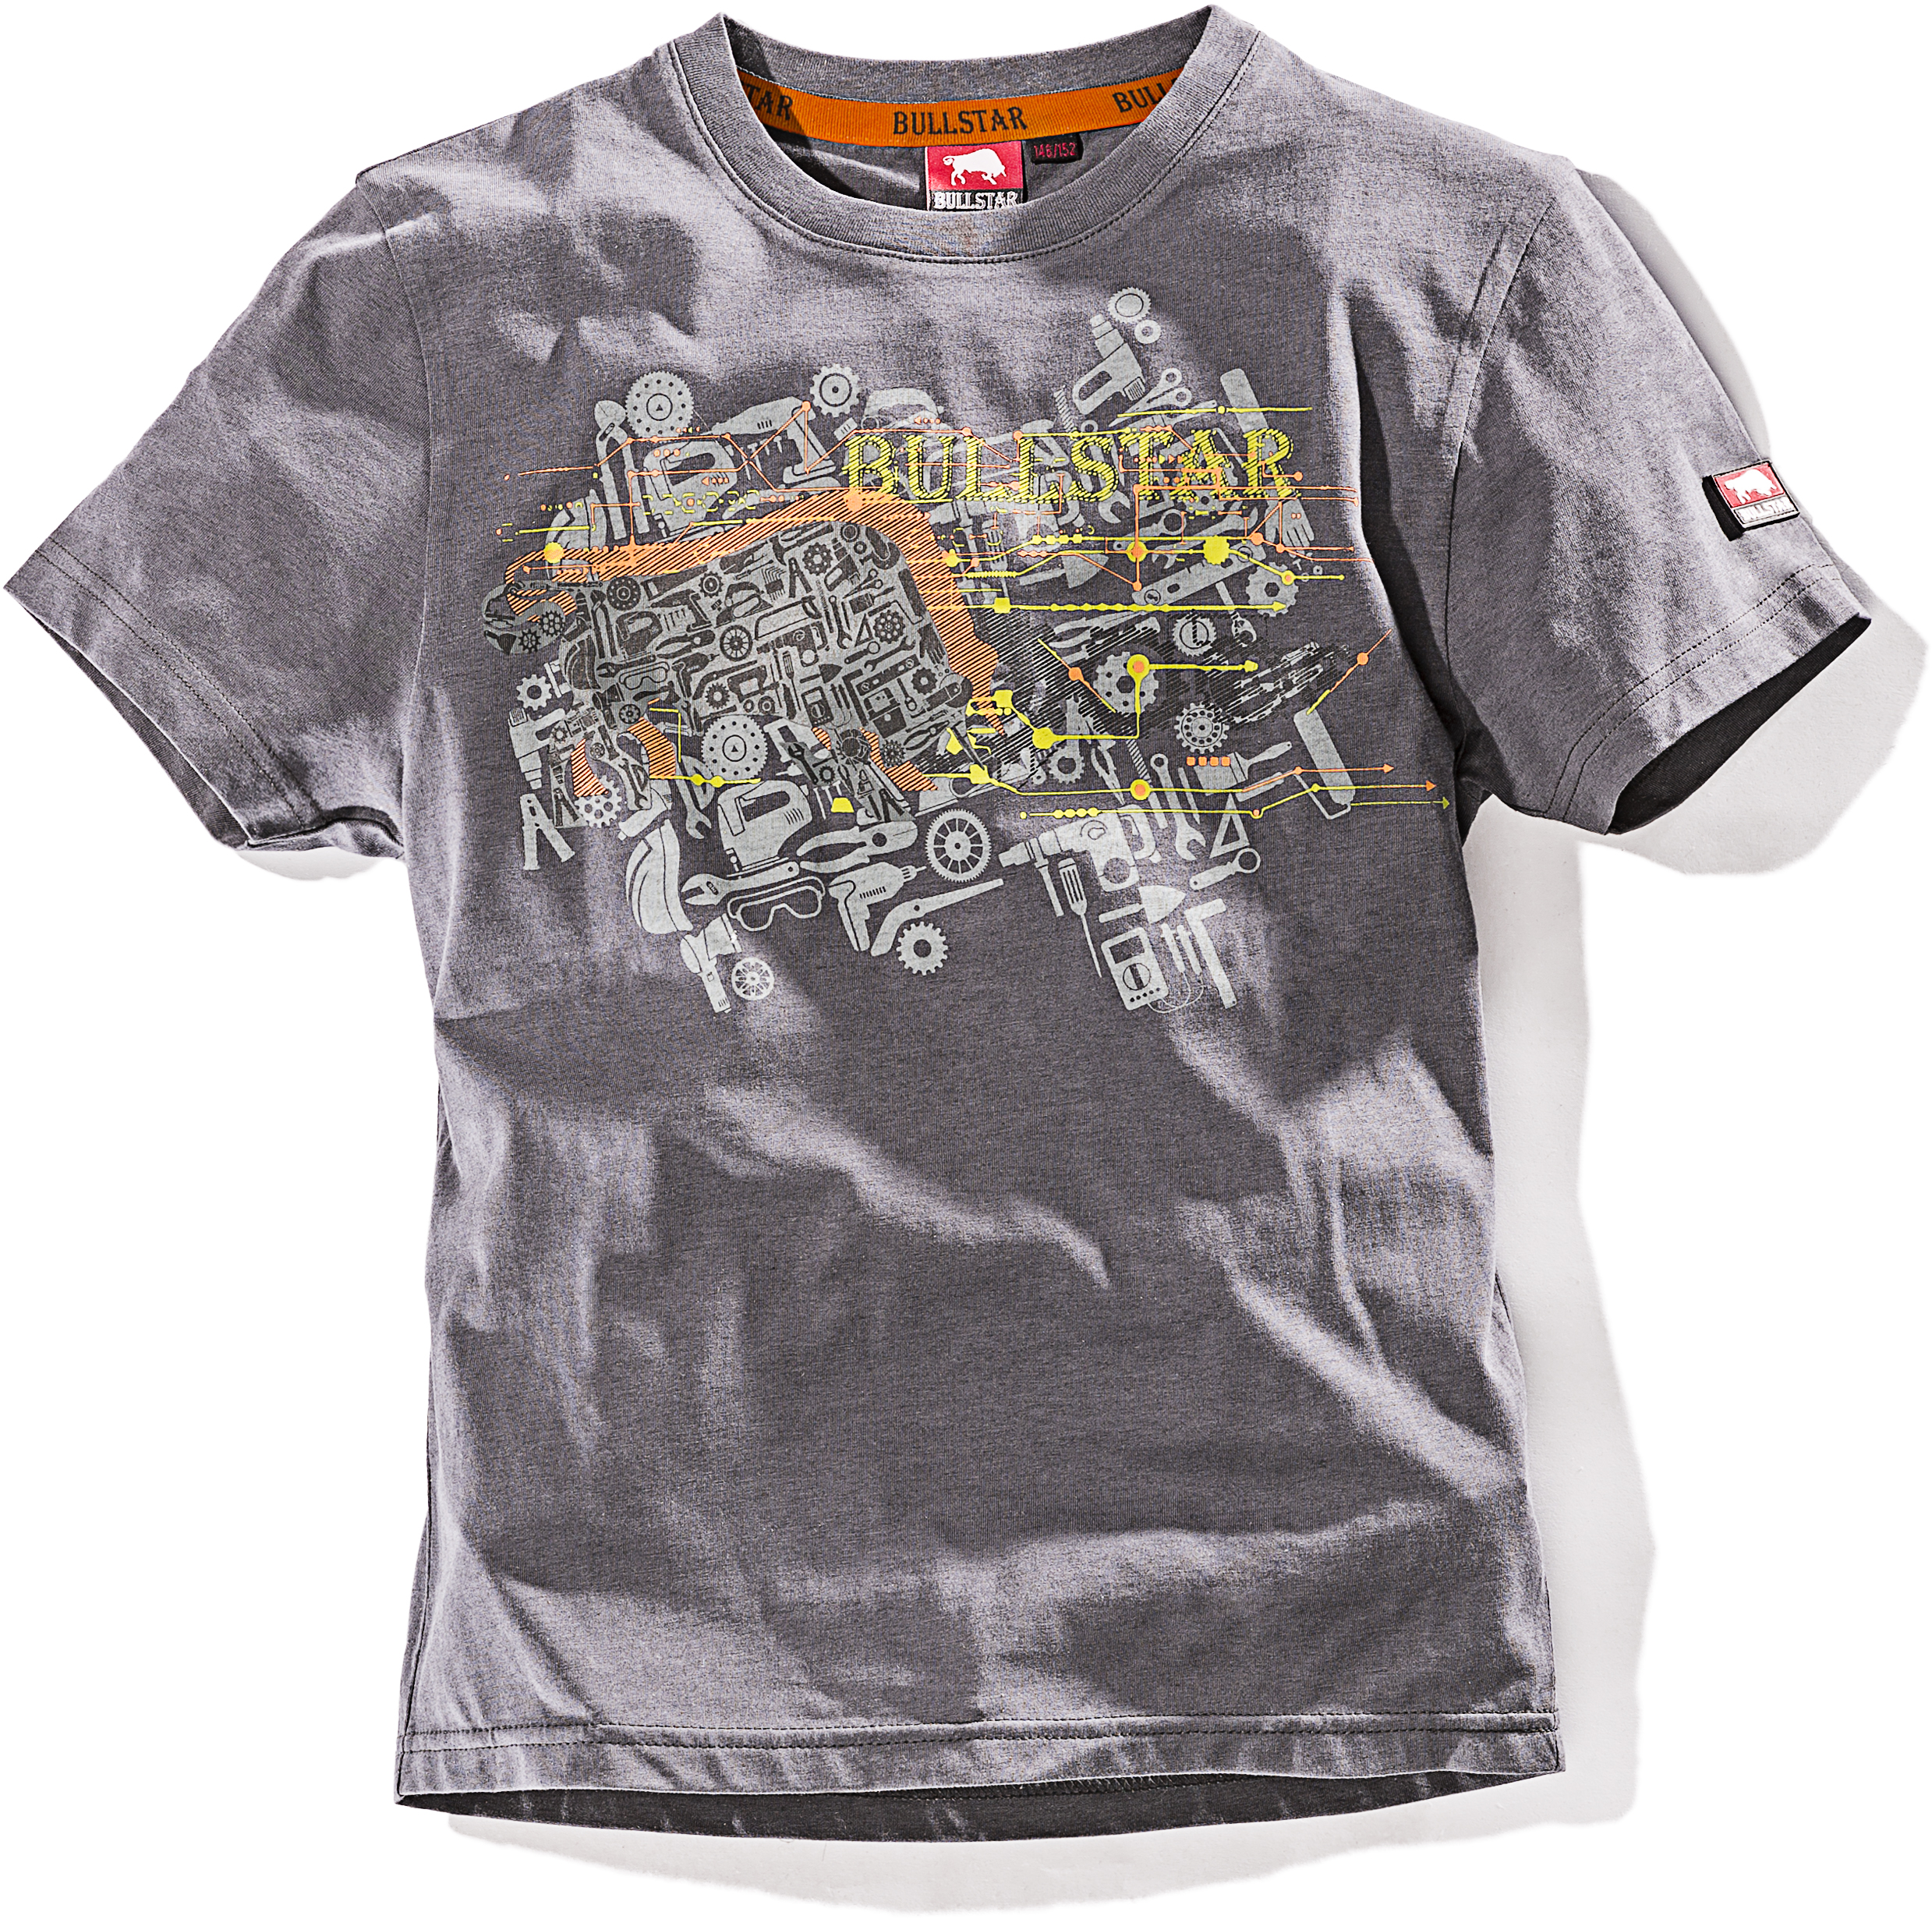 BULLSTAR Kinder-T-Shirt ULTRA, Grau meliert, Gr. 122/128